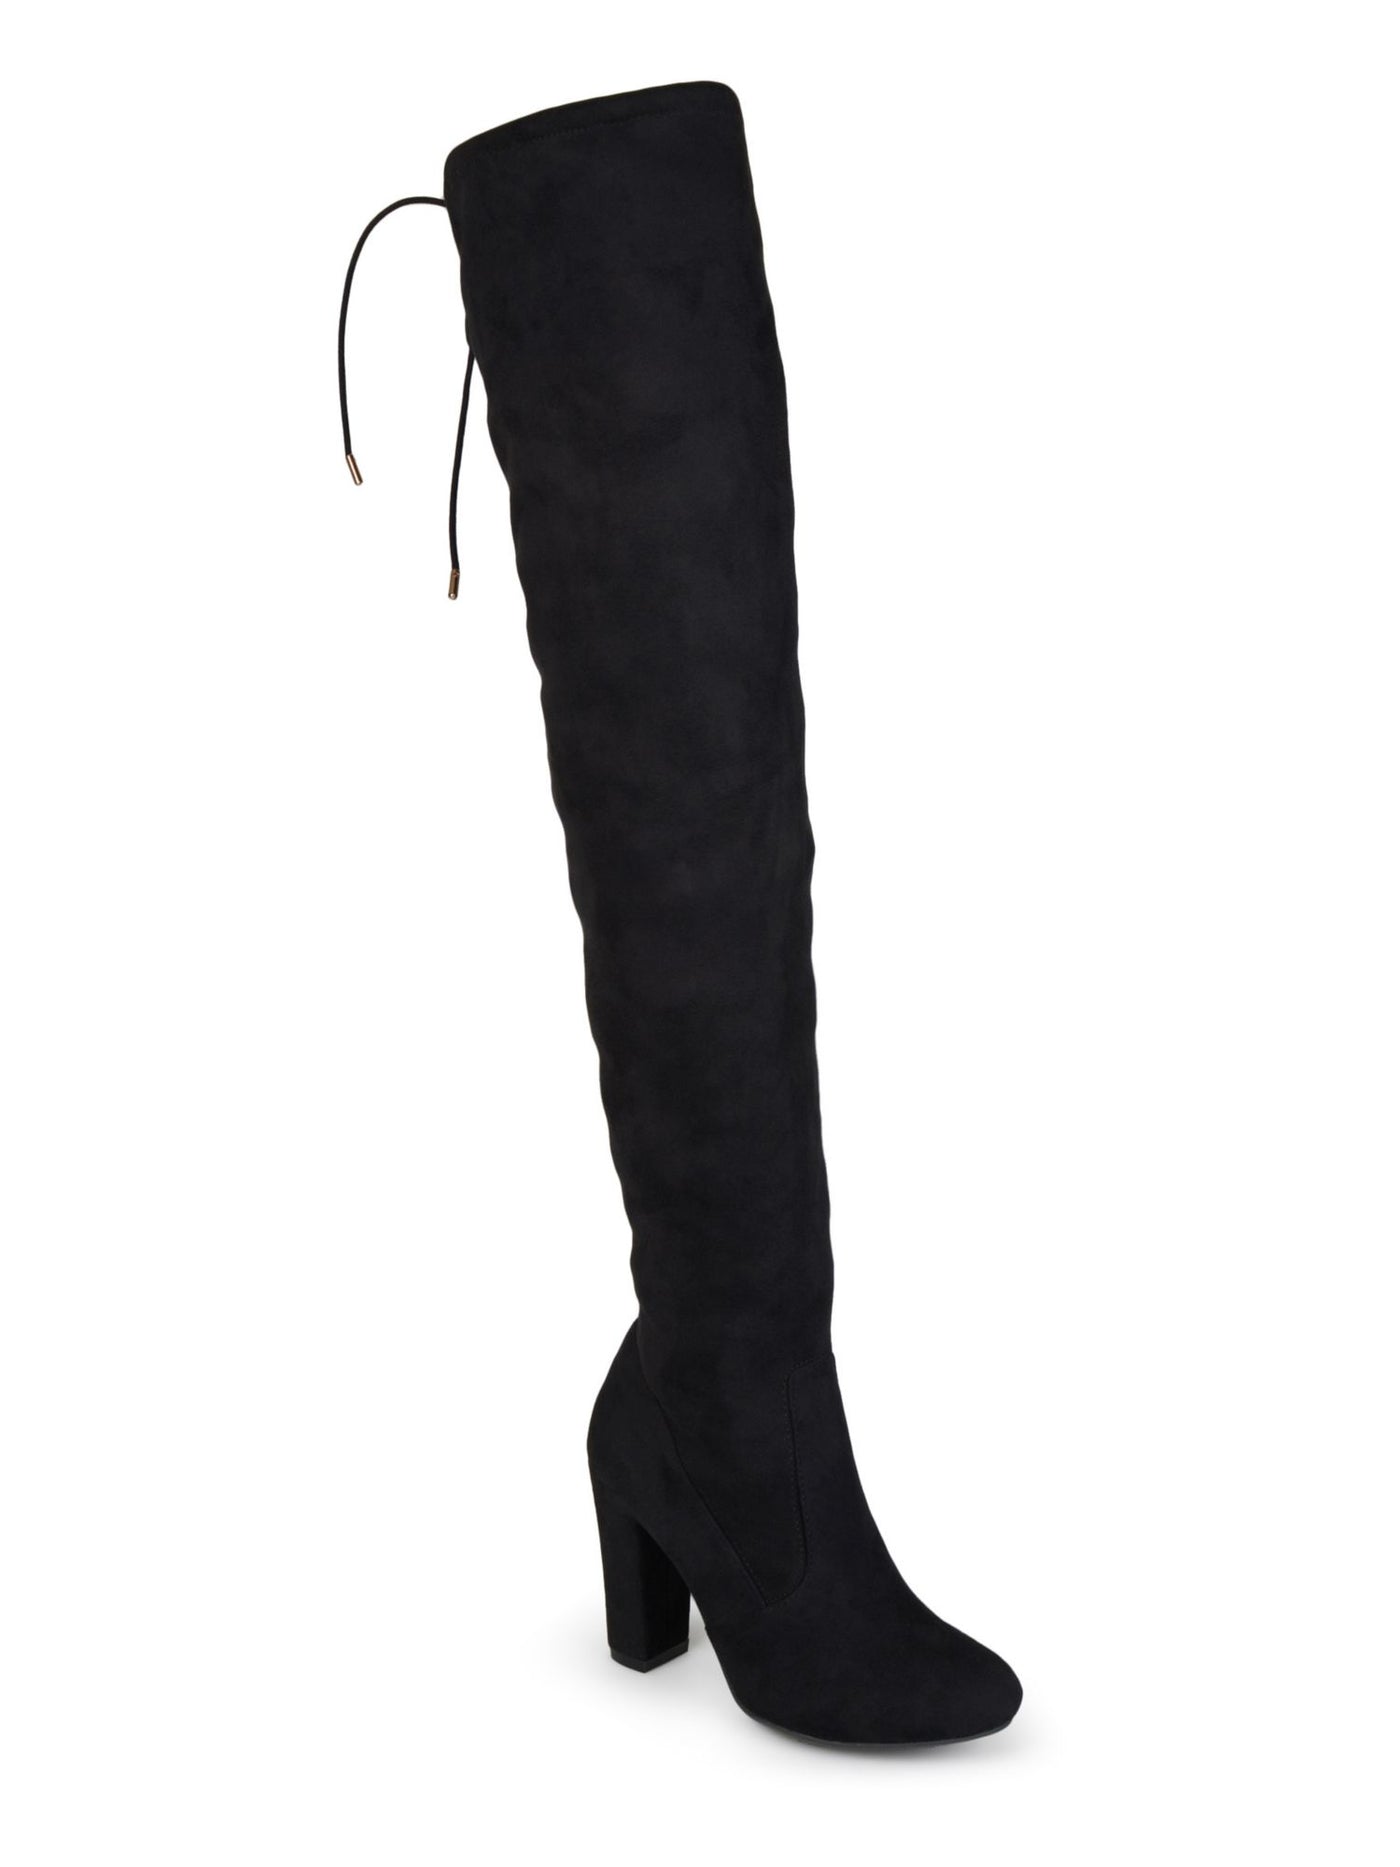 JOURNEE COLLECTION Womens Black Drawstring Top Tie Wide Calf Maya Round Toe Block Heel Zip-Up Heeled Boots 6 M WC